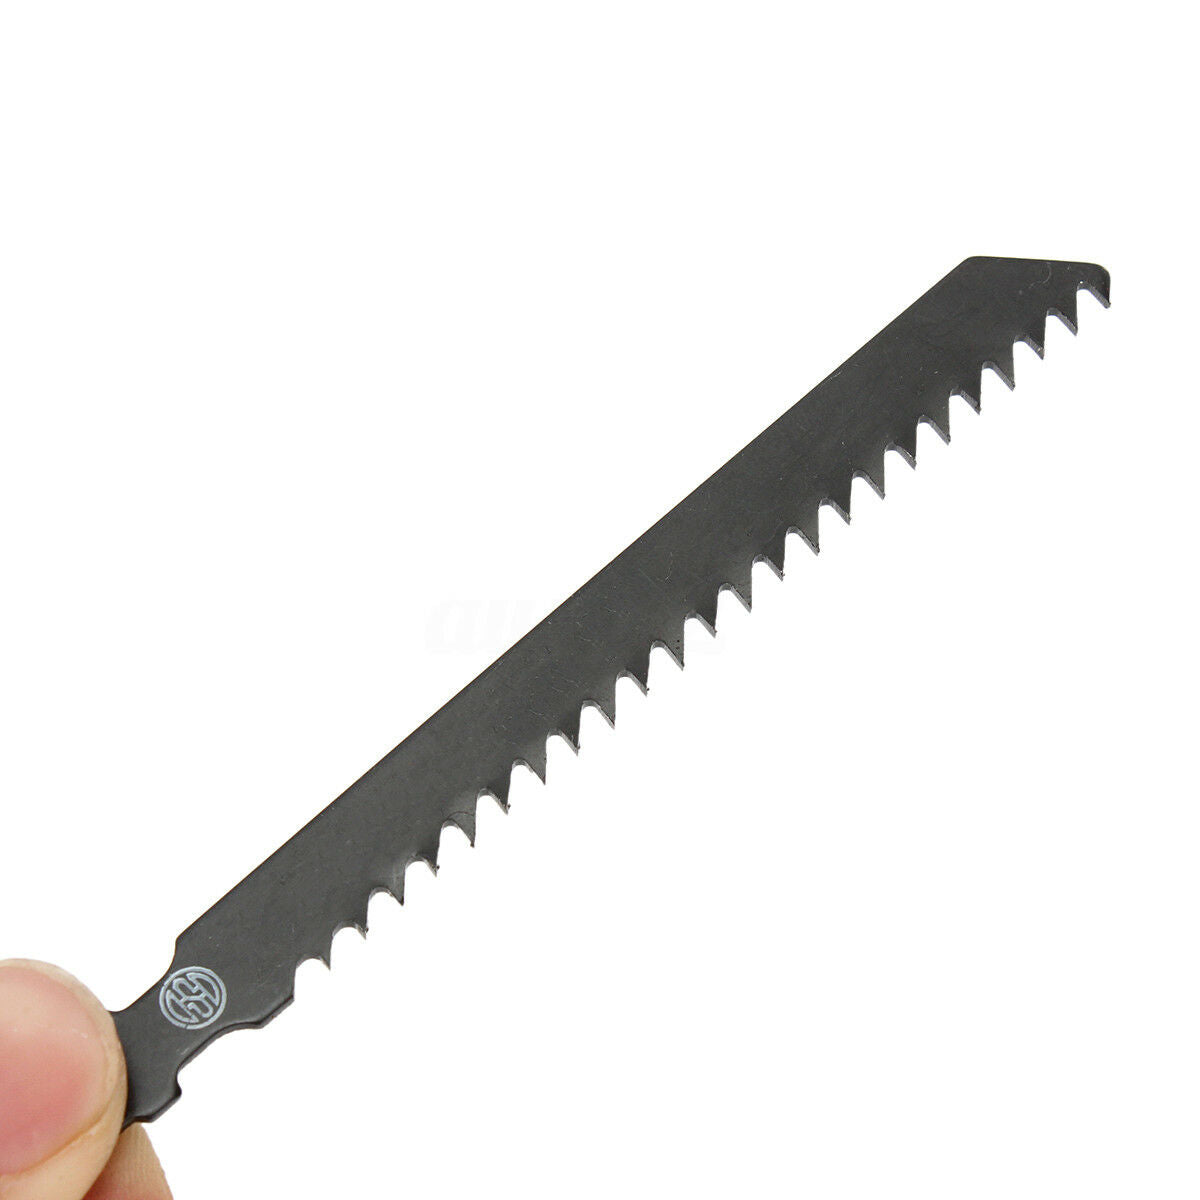 5Pcs/pack T111C HCS T shank Jigsaw Blades Wood Plastic Metal Fast Cutting Tools